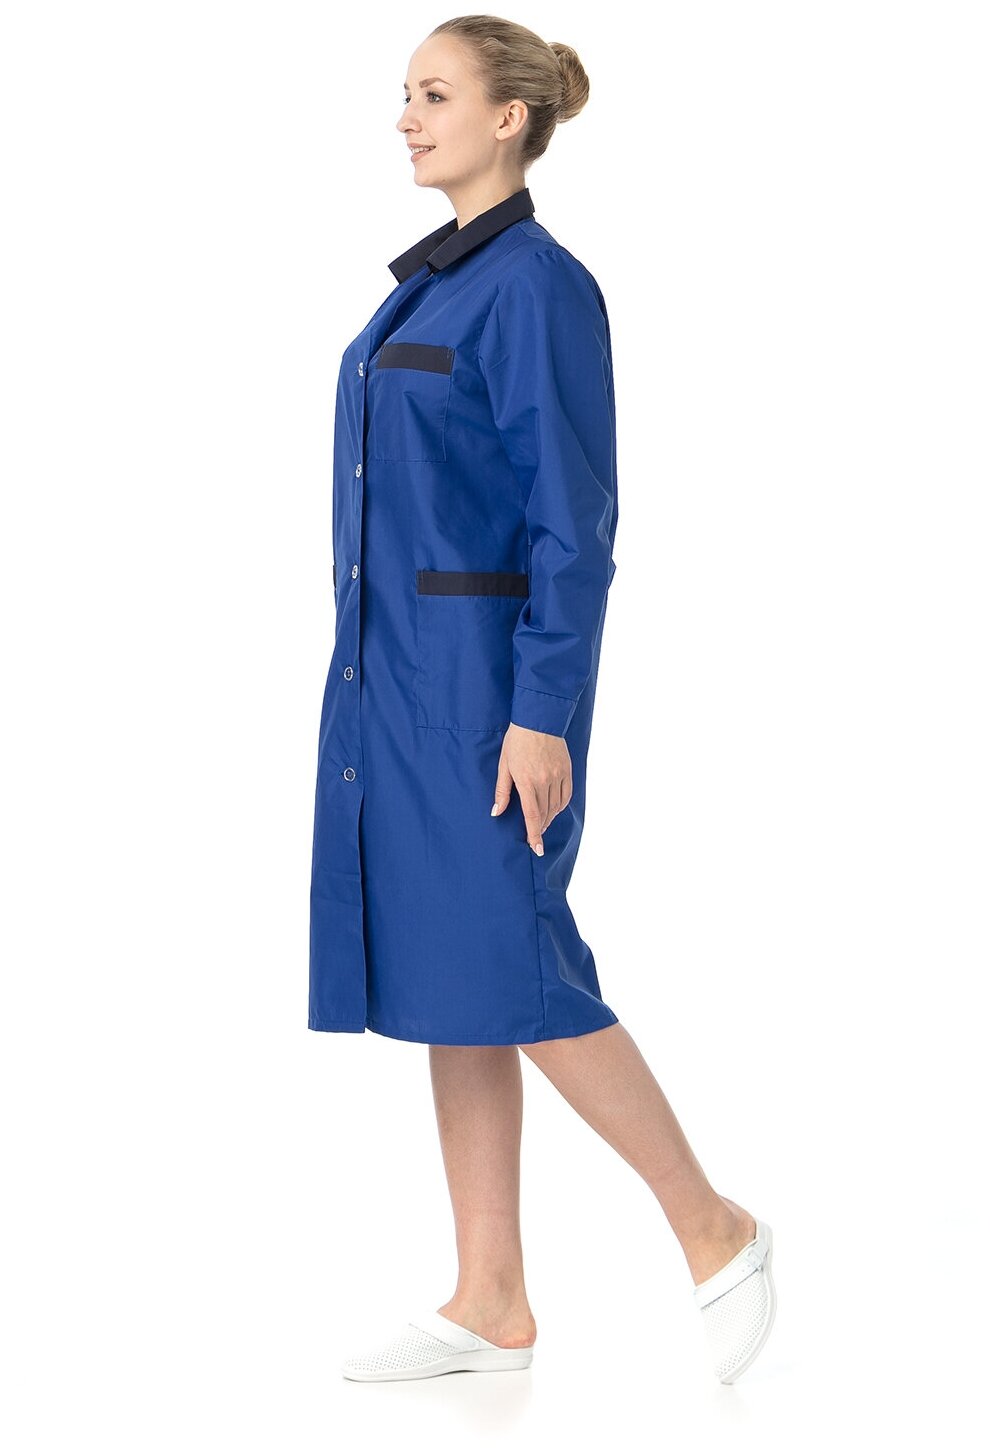 Халат женский "Модельный" (ИТР, васильковый с темно-синей отделкой) (размер 44-46, рост 158-164)